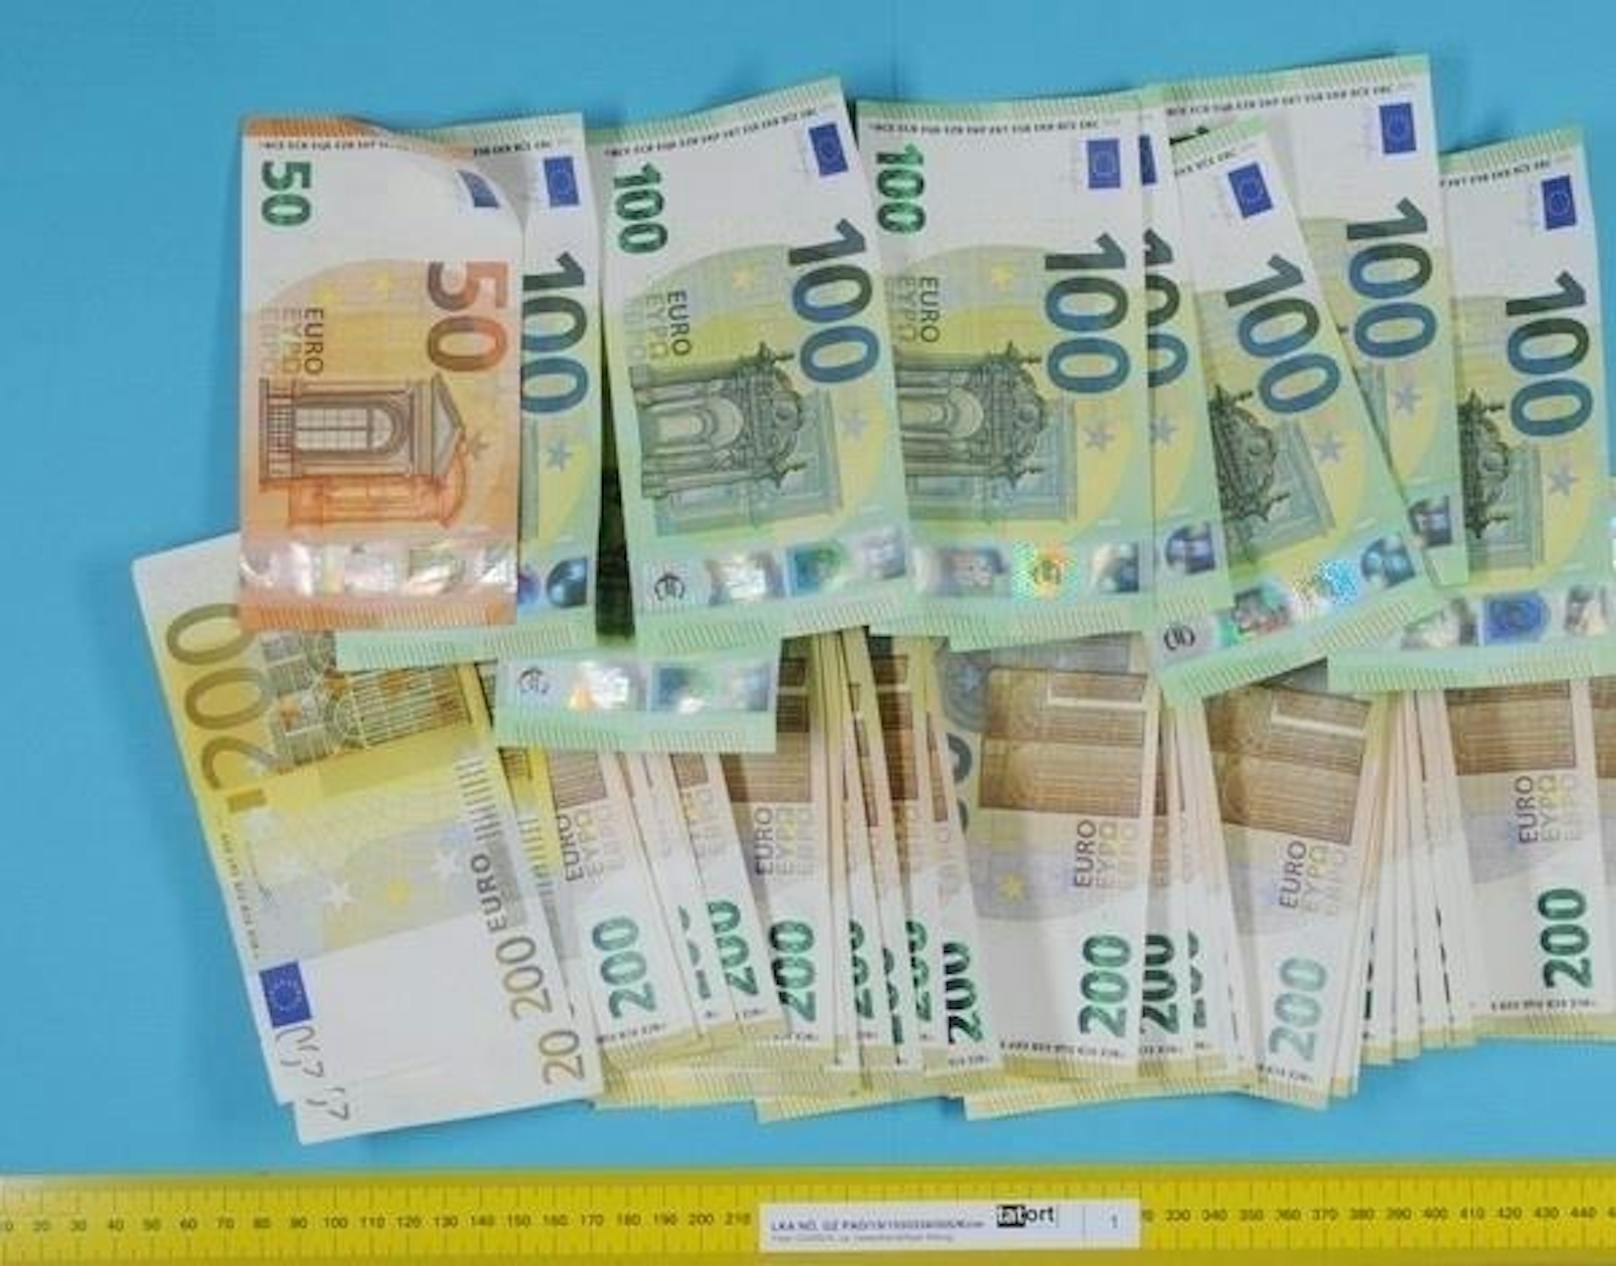 Falsche Polizisten ausgeforscht: 700.000 Euro Schaden.